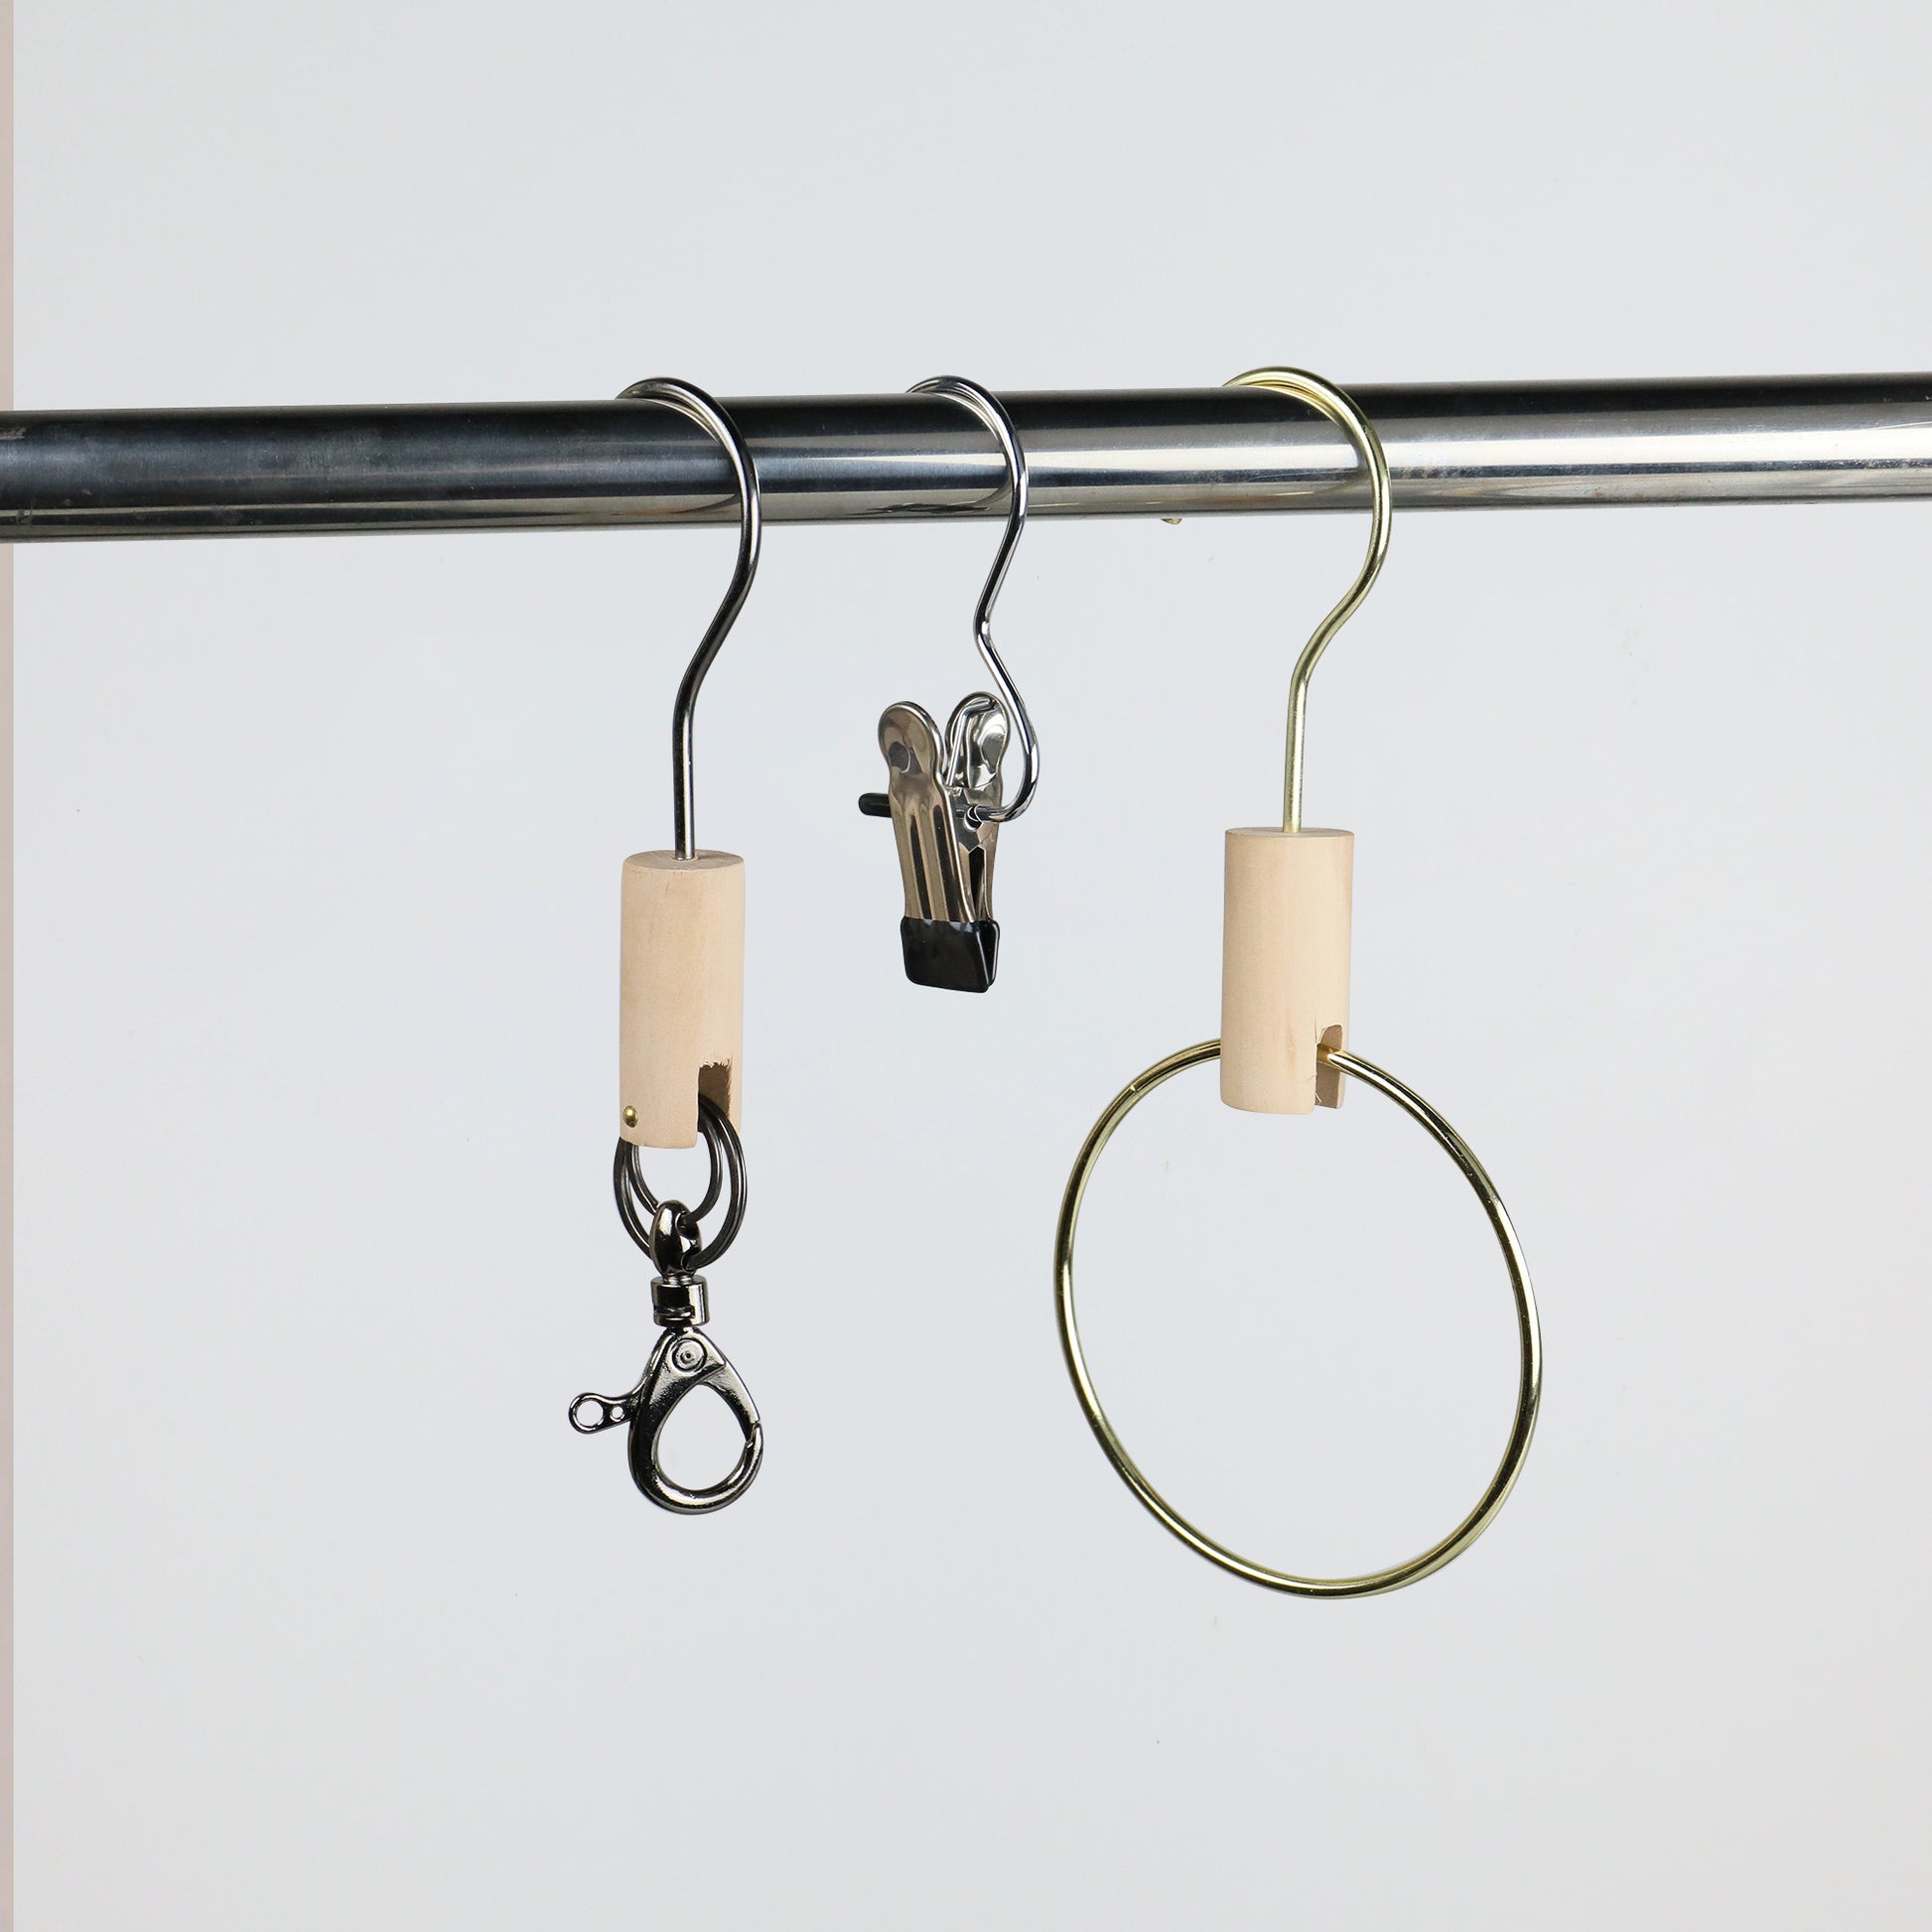 Solid Wood Metal Round Hook, Clothing Store Multifunctional Hooks for Jeans/Pants, Bathroom Towel Metal Clips,Scarf Hangers Racks Hook DE-LIANG